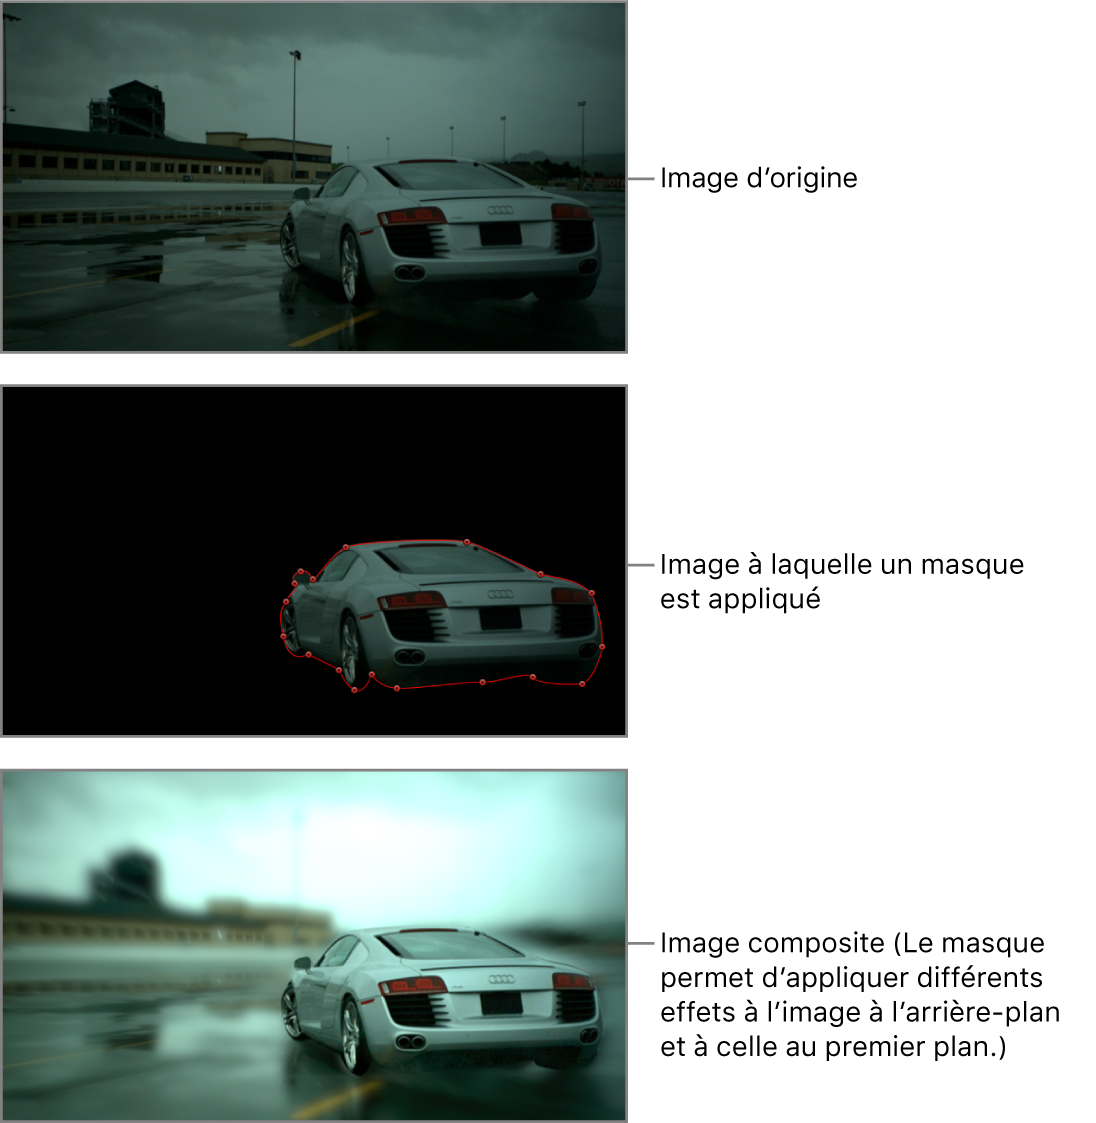 Canevas affichant l’image d’une voiture avant d’appliquer le masque, lequel est tracé autour de la voiture, et l’effet final de rotoscopie (un filtre de flou est appliqué à l’arrière-plan mais pas à la voiture)